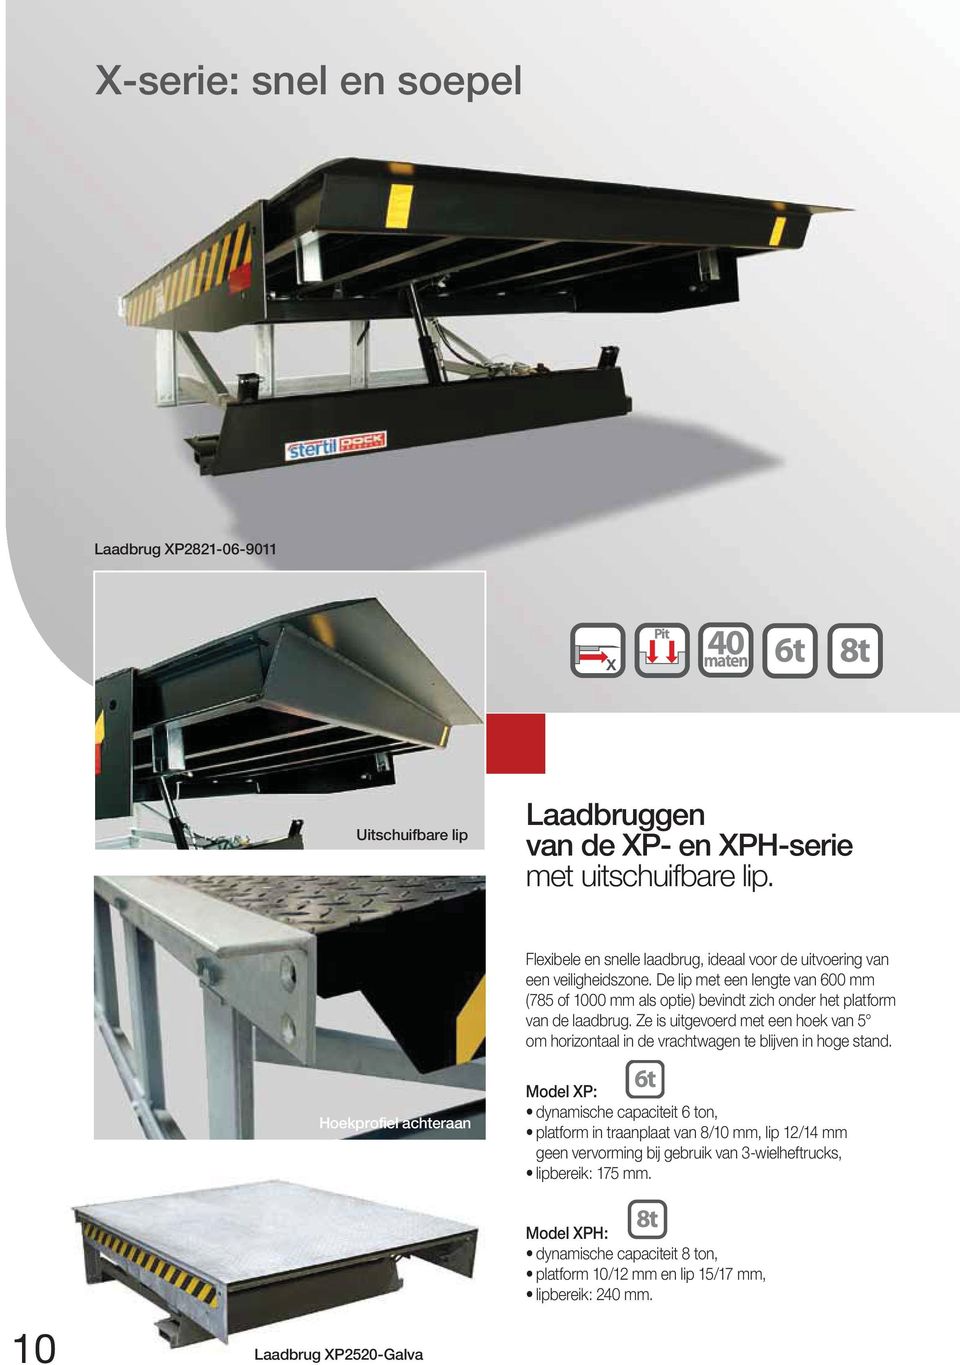 Hoekprofiel achteraan Laadbrug XP2520-Galva Flexibele en snelle laadbrug, ideaal voor de uitvoering van